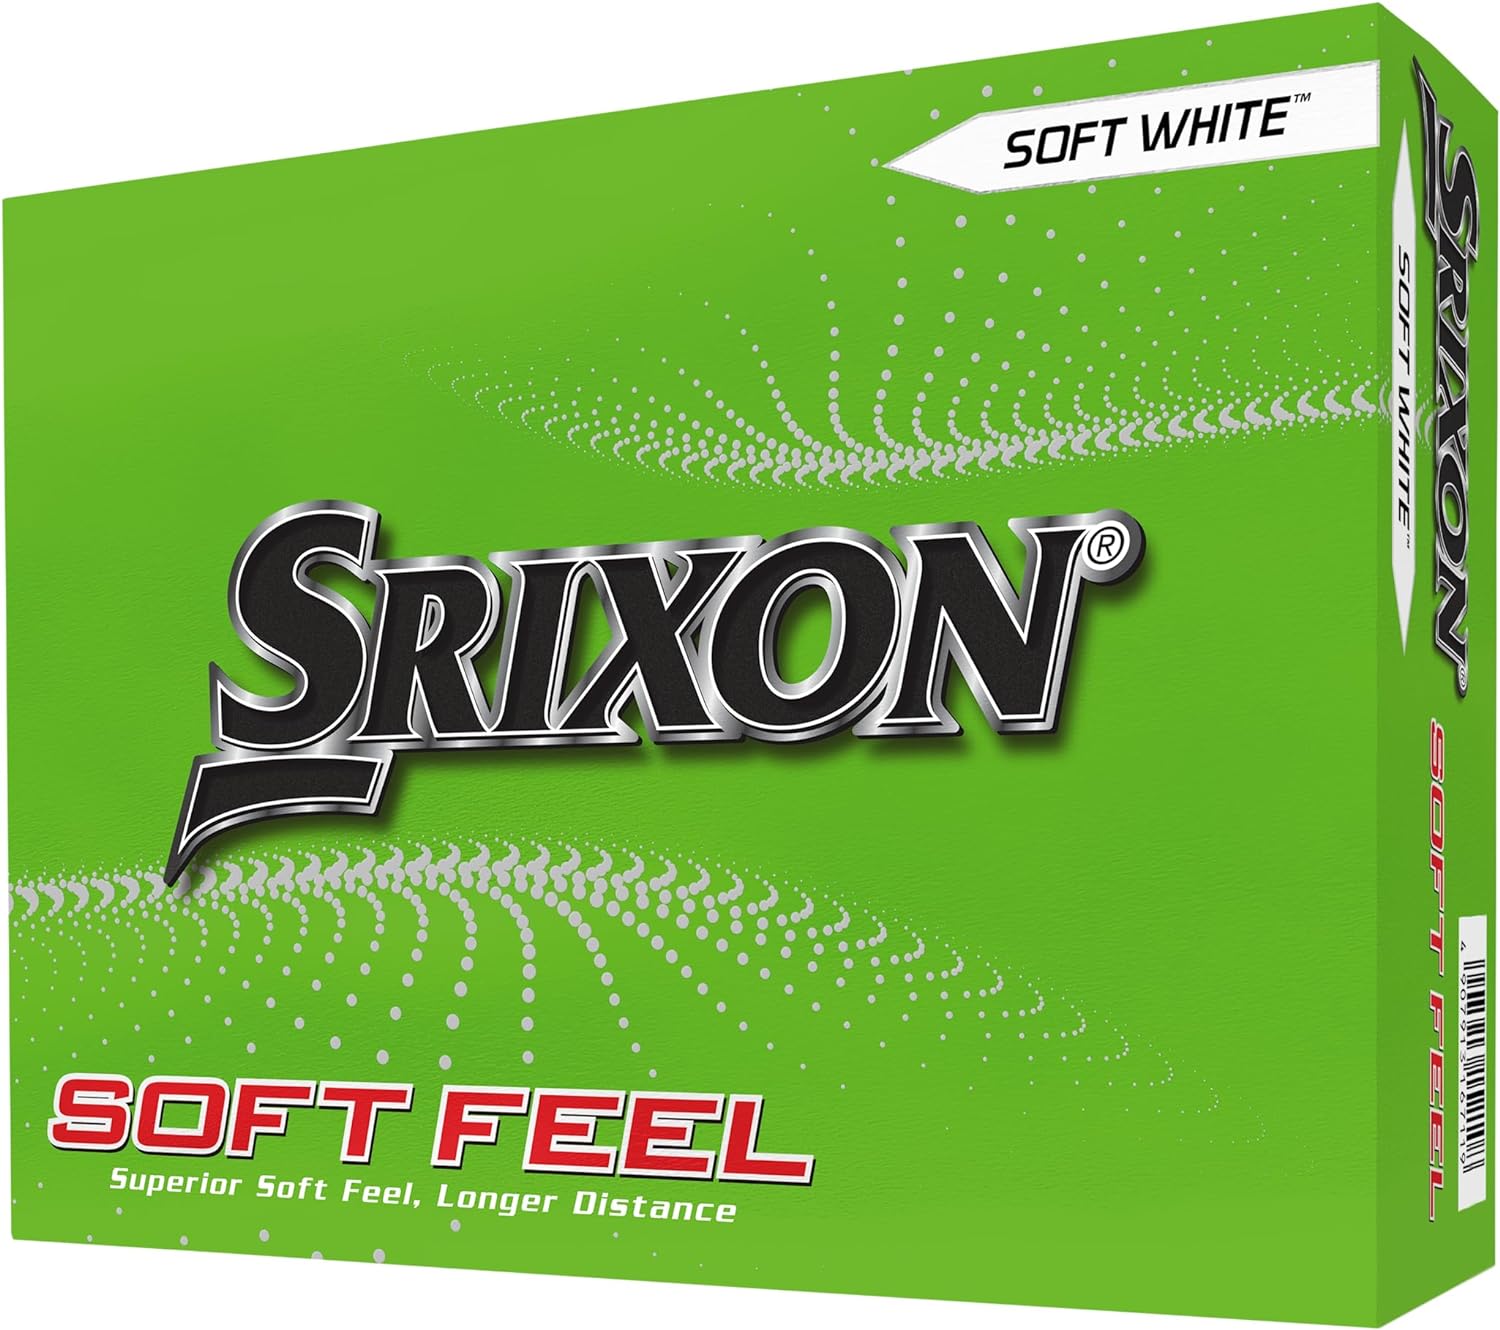 Srixon Soft Feel Golf Balls - Best golf balls for average golfer